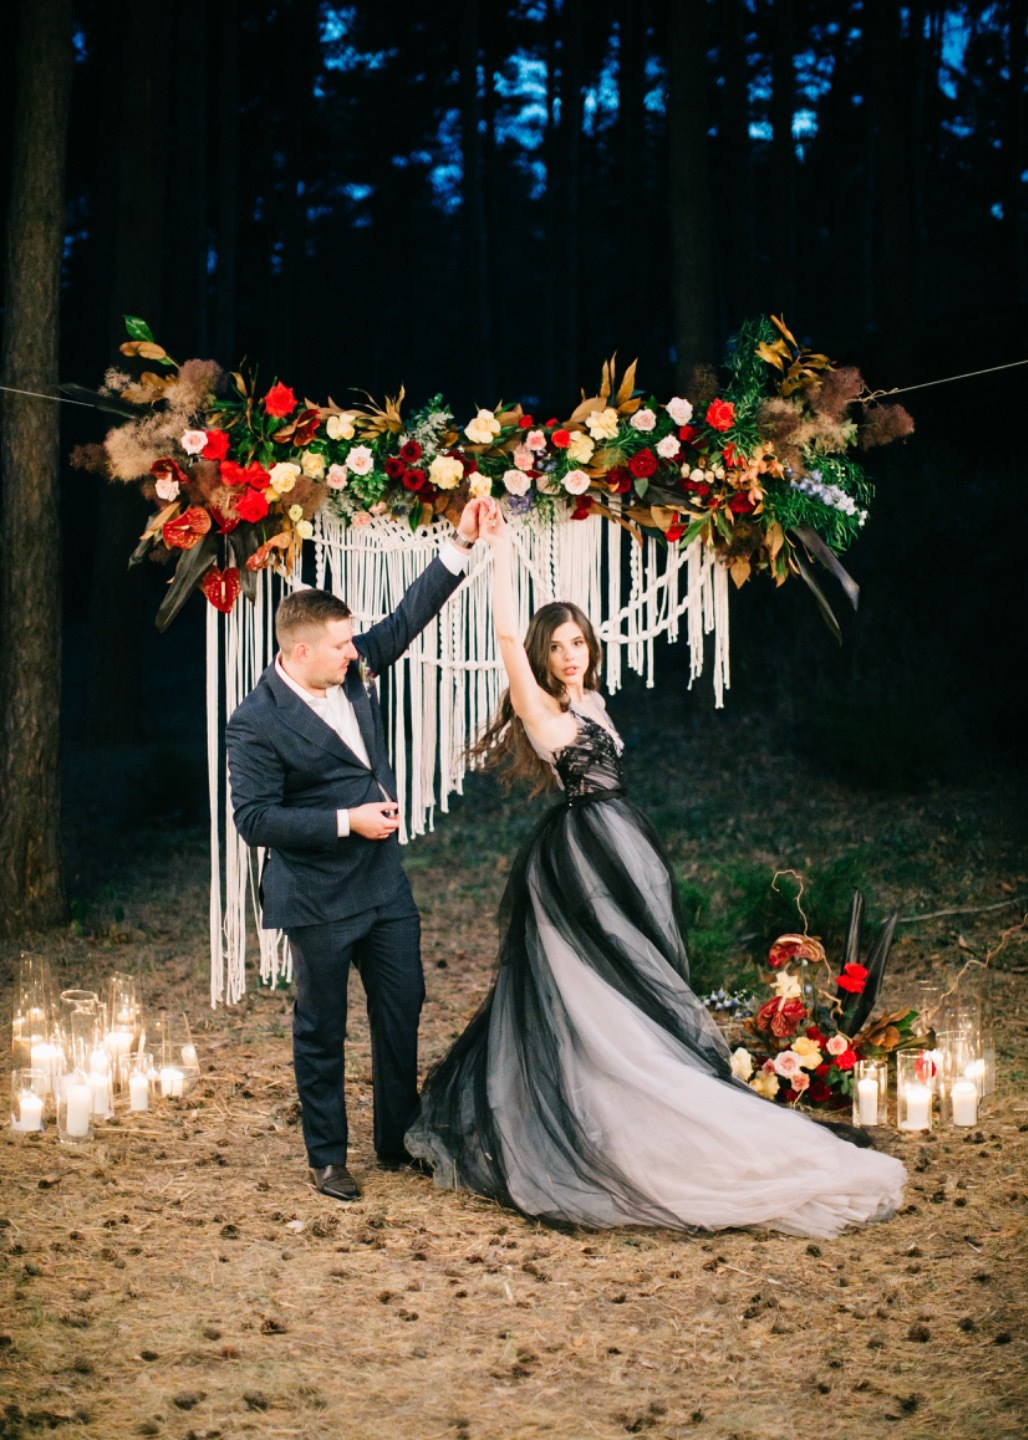 Gray Inspiration: атмосферная свадьба в лесу